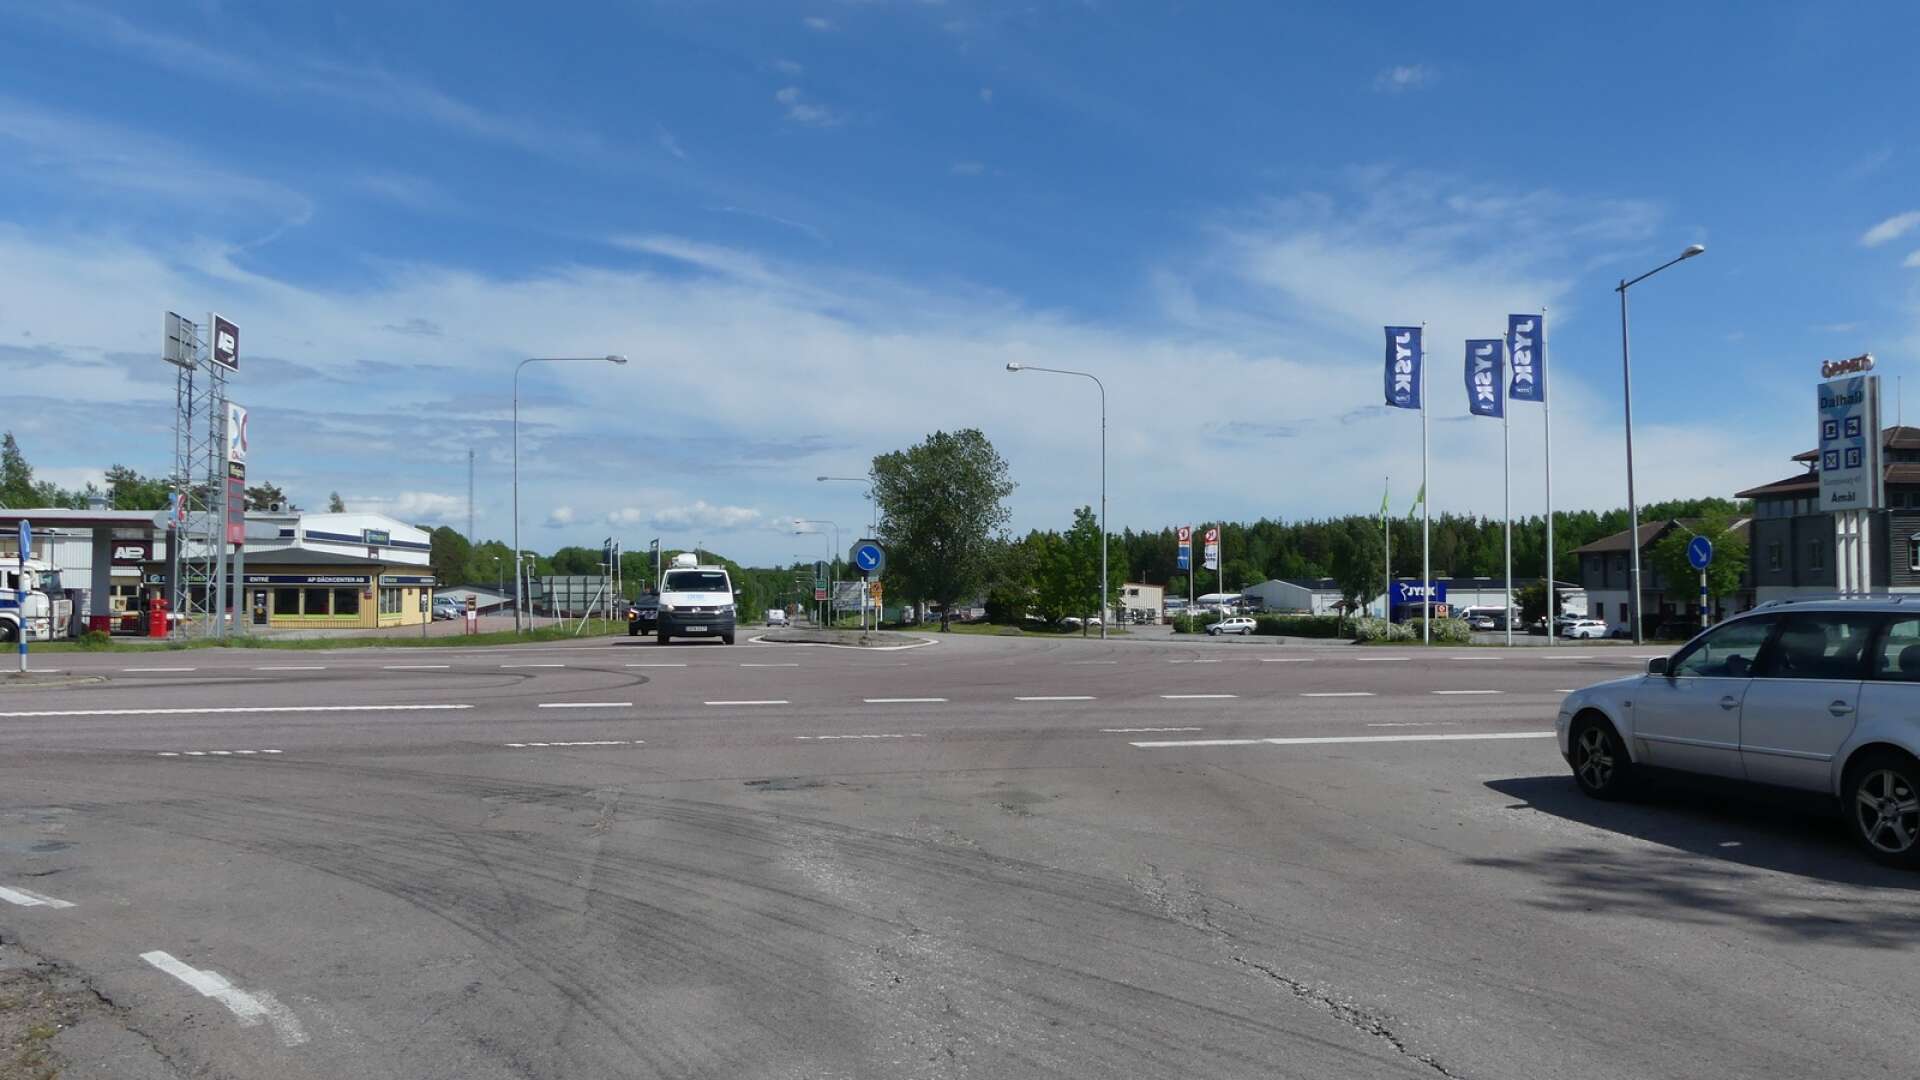 Trafikverket utreder en möjlig rondell vid korsningen E45 – Strömstadsvägen i Åmål.